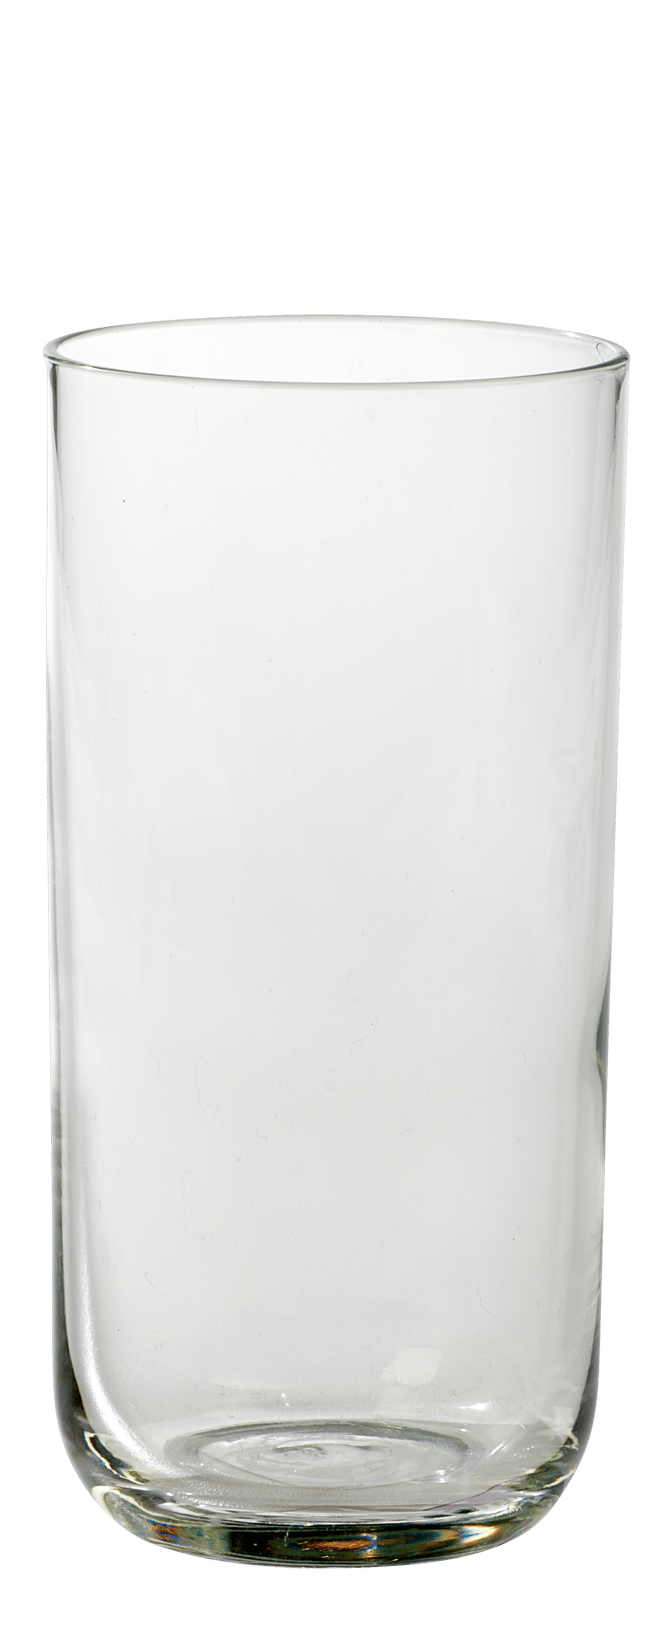 BLISS Verre longdrink transparent H 13,4 cm - Ø 6,5 cm